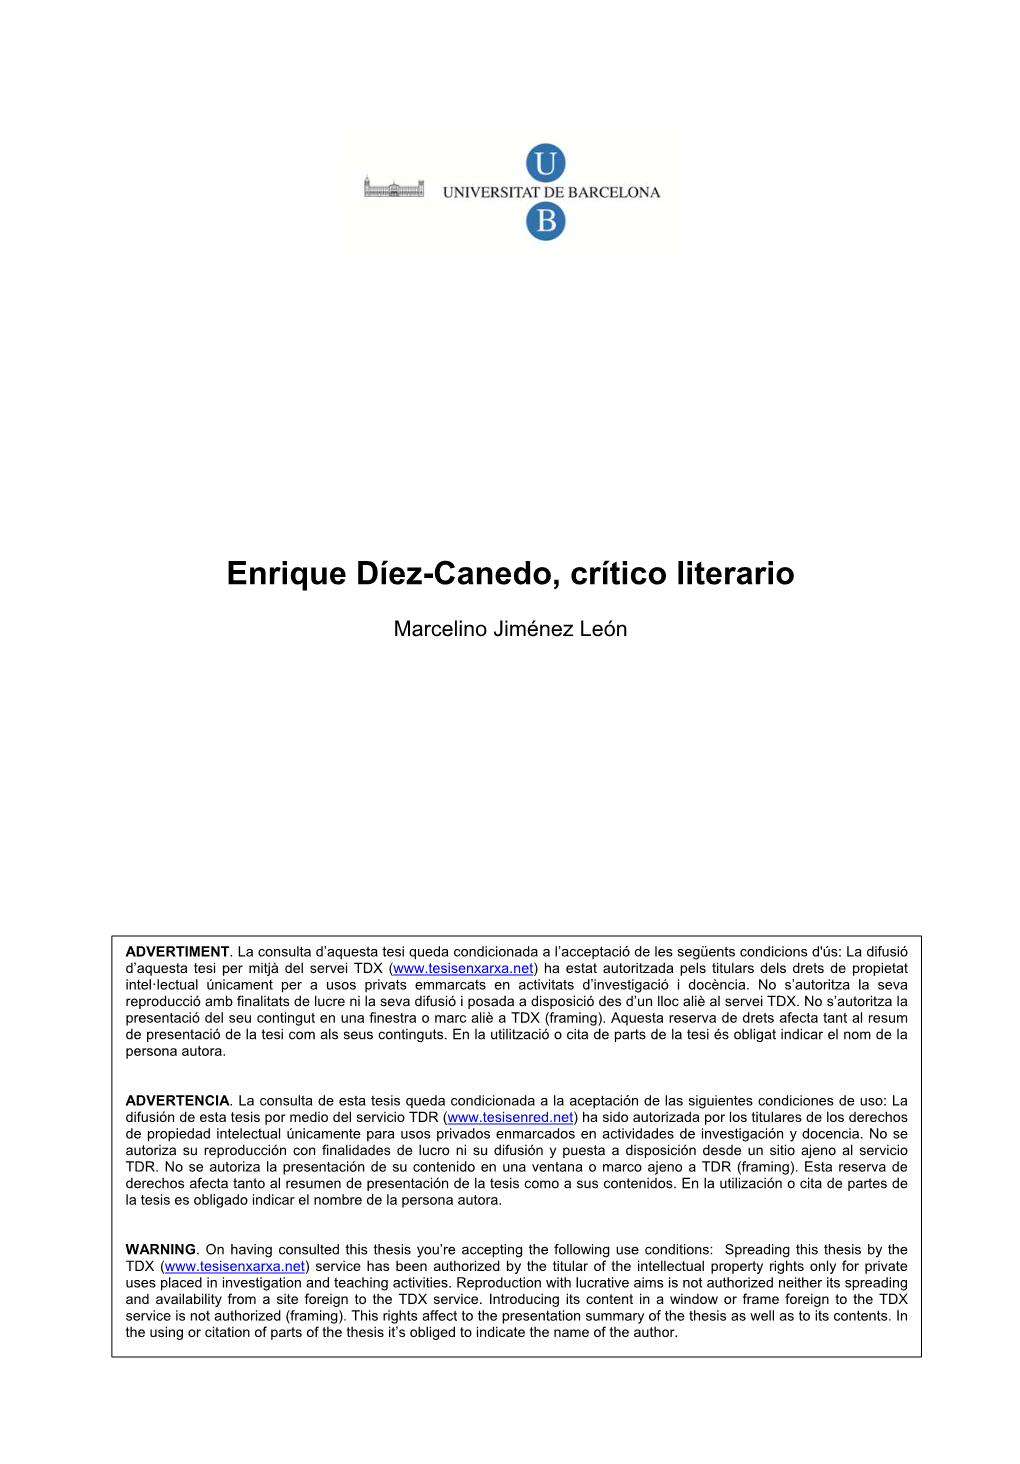 Enrique Díez-Canedo, Crítico Literario